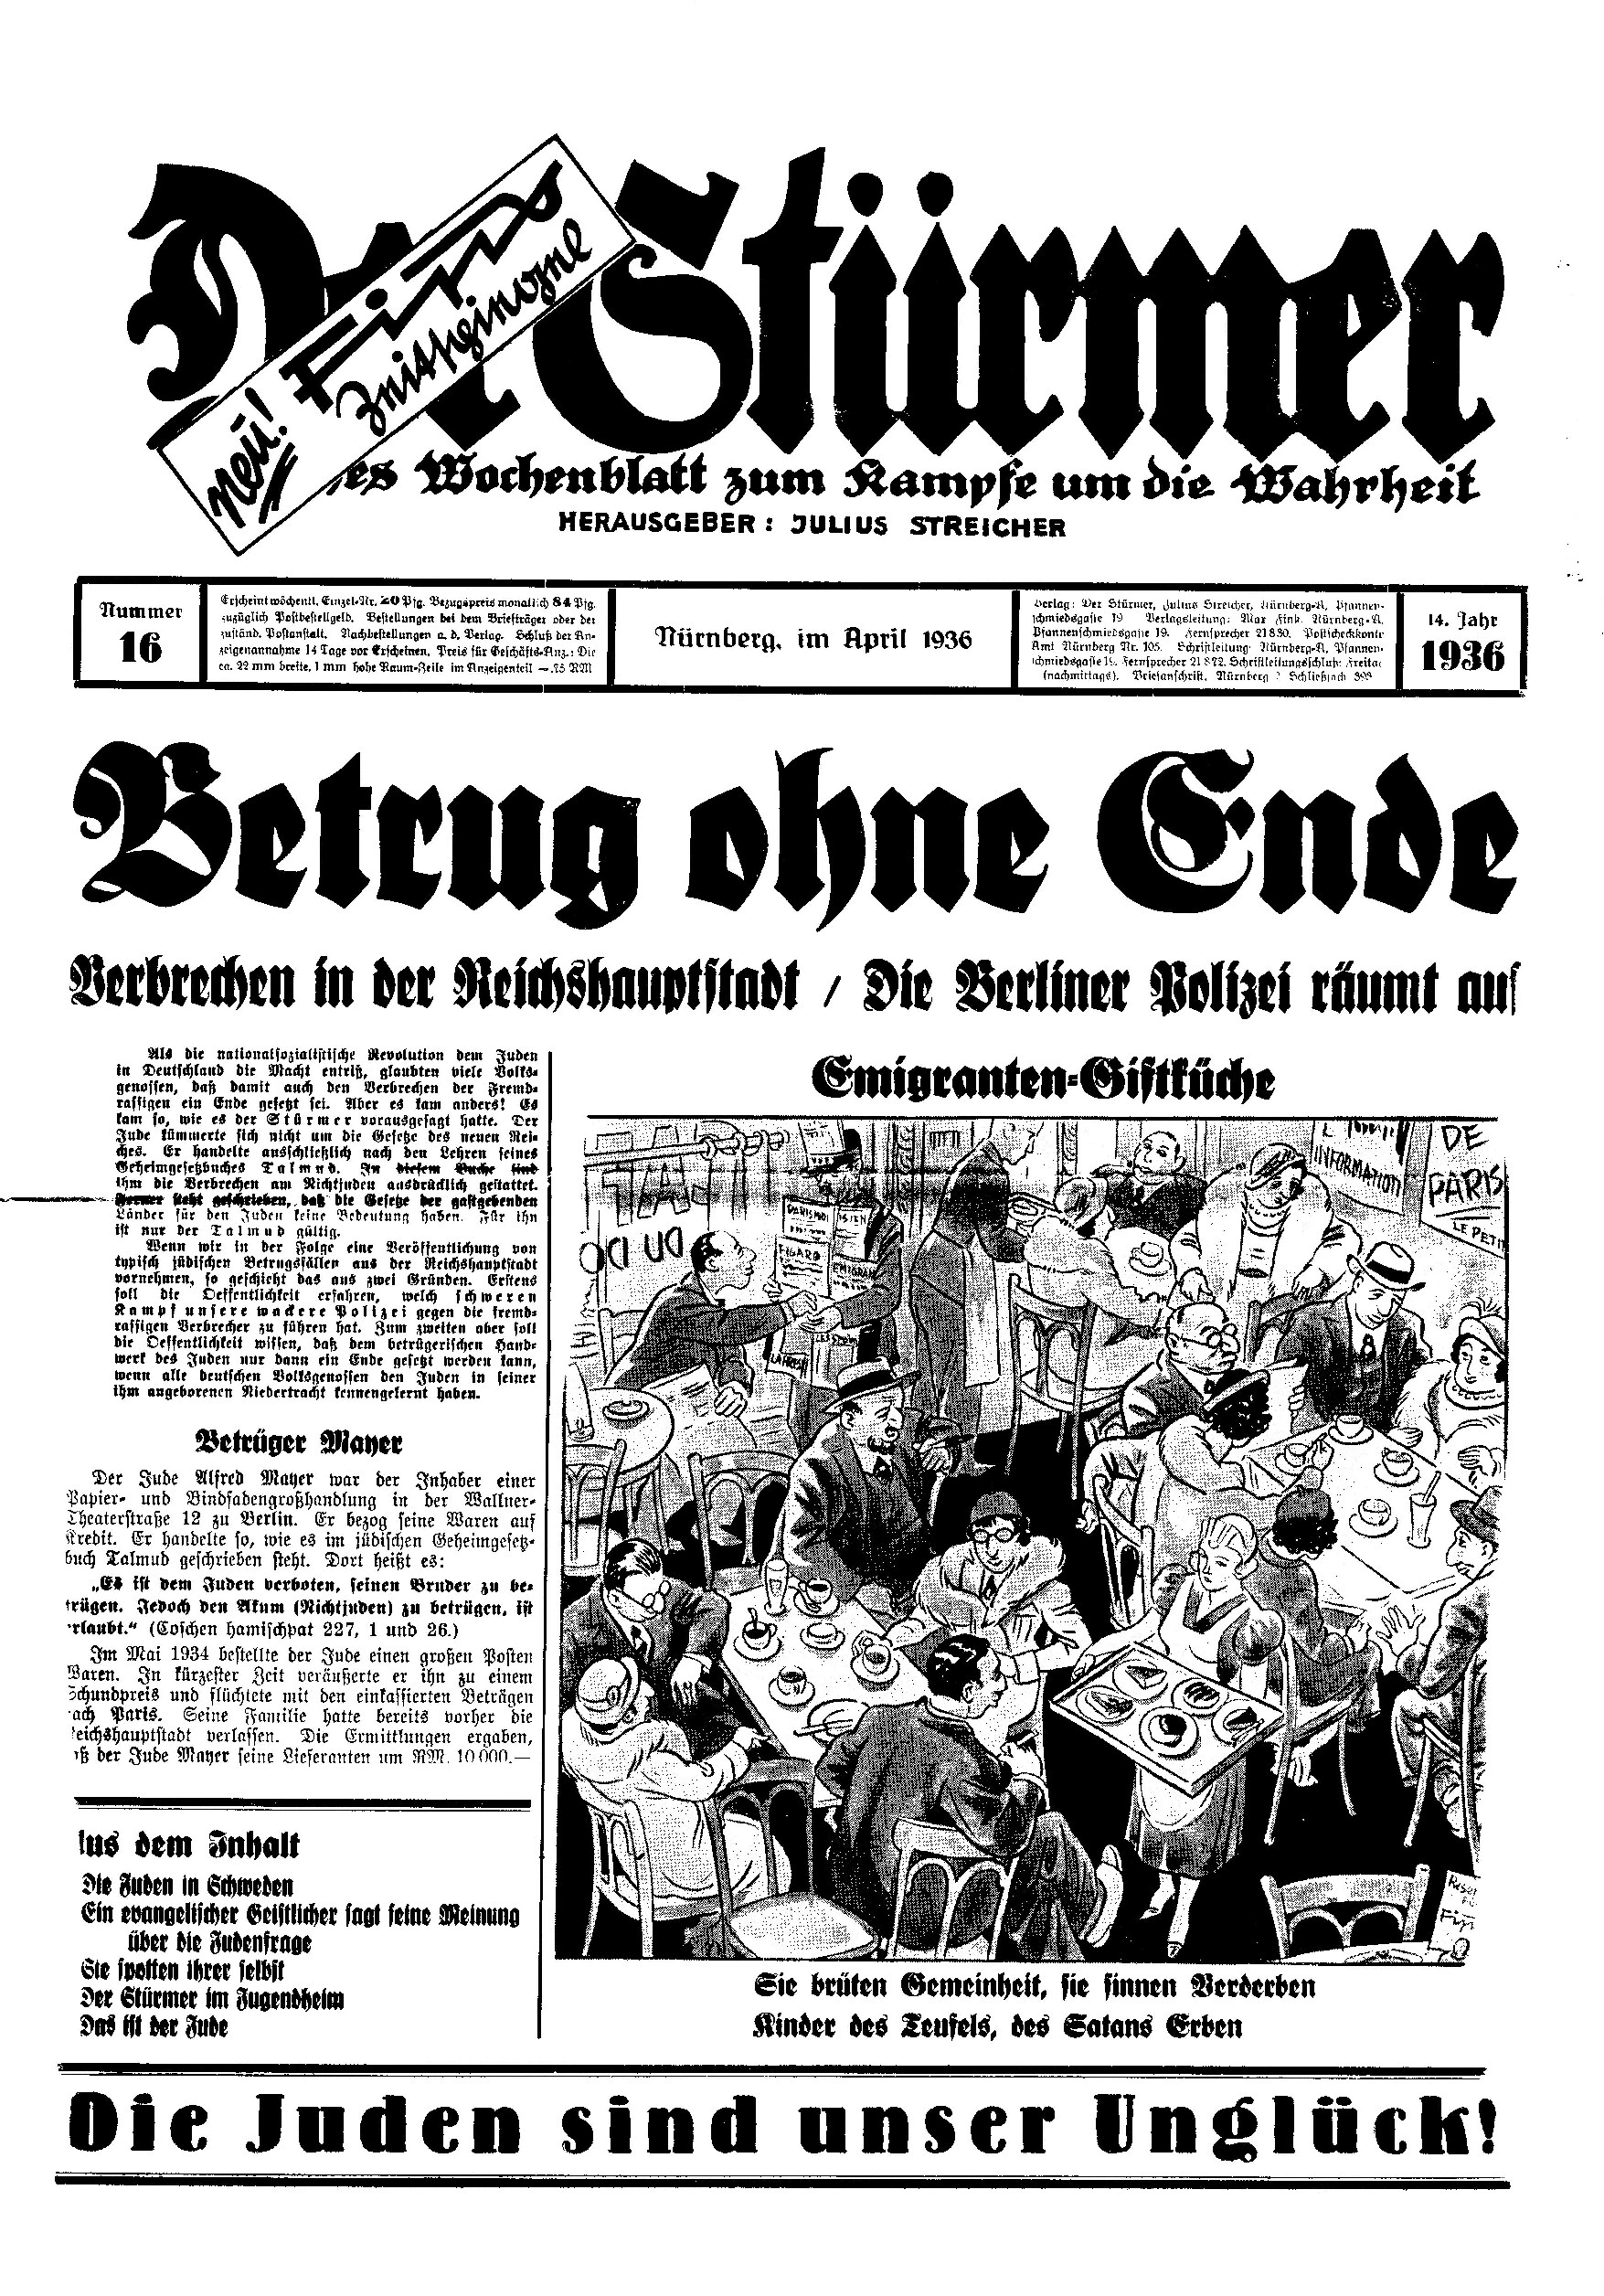 Der Stürmer - 1936 Nr. 16 - Betrug ohne Ende